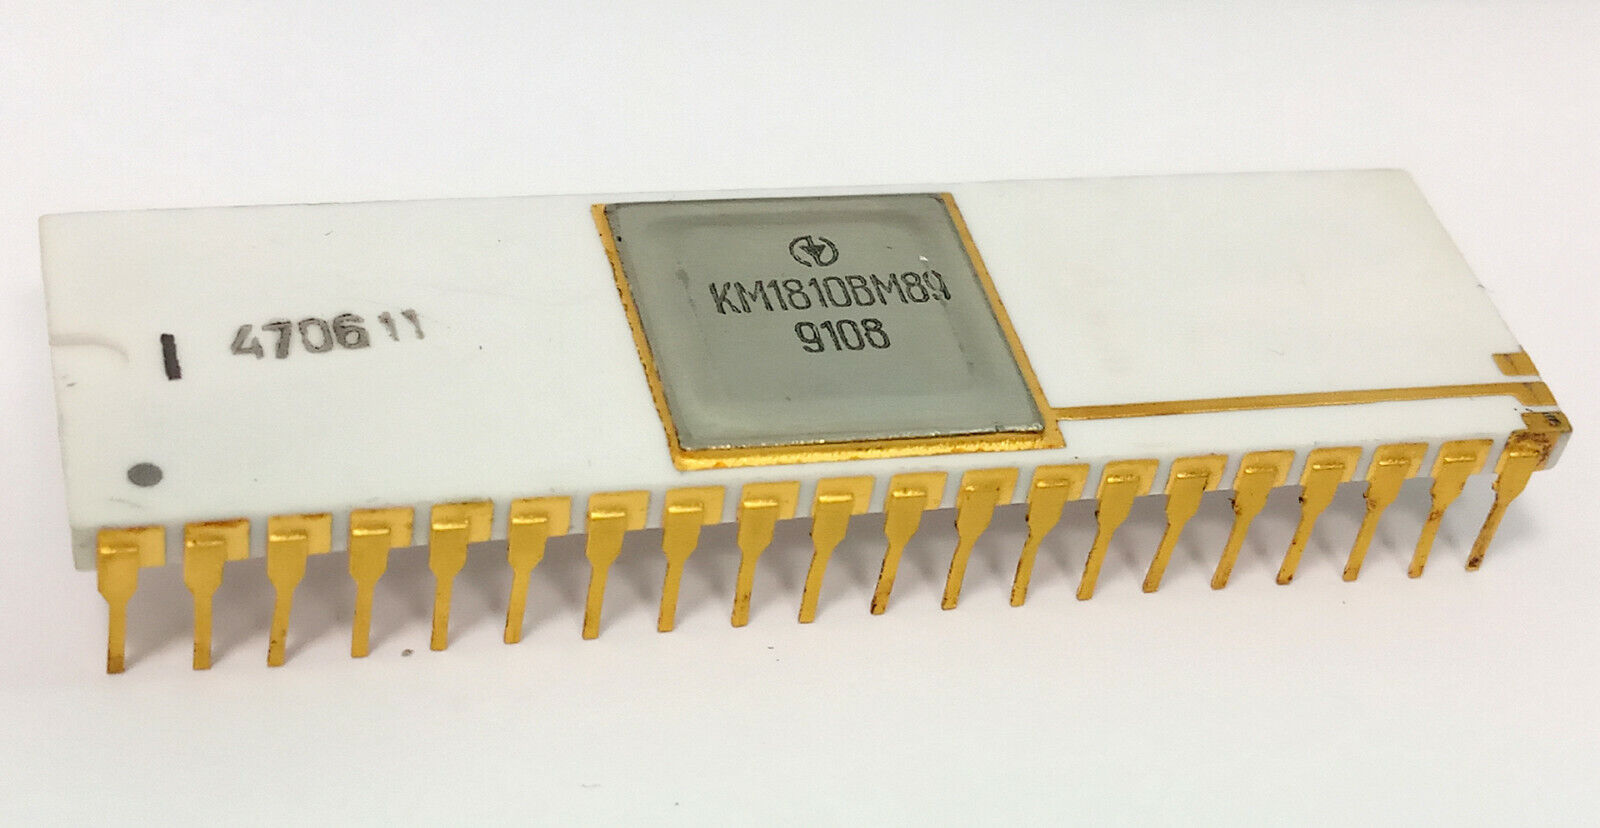 USSR Soviet Russian Gold Ceramic Clone Intel 8089 I/O FPU 8080 CPU KM1810VM89